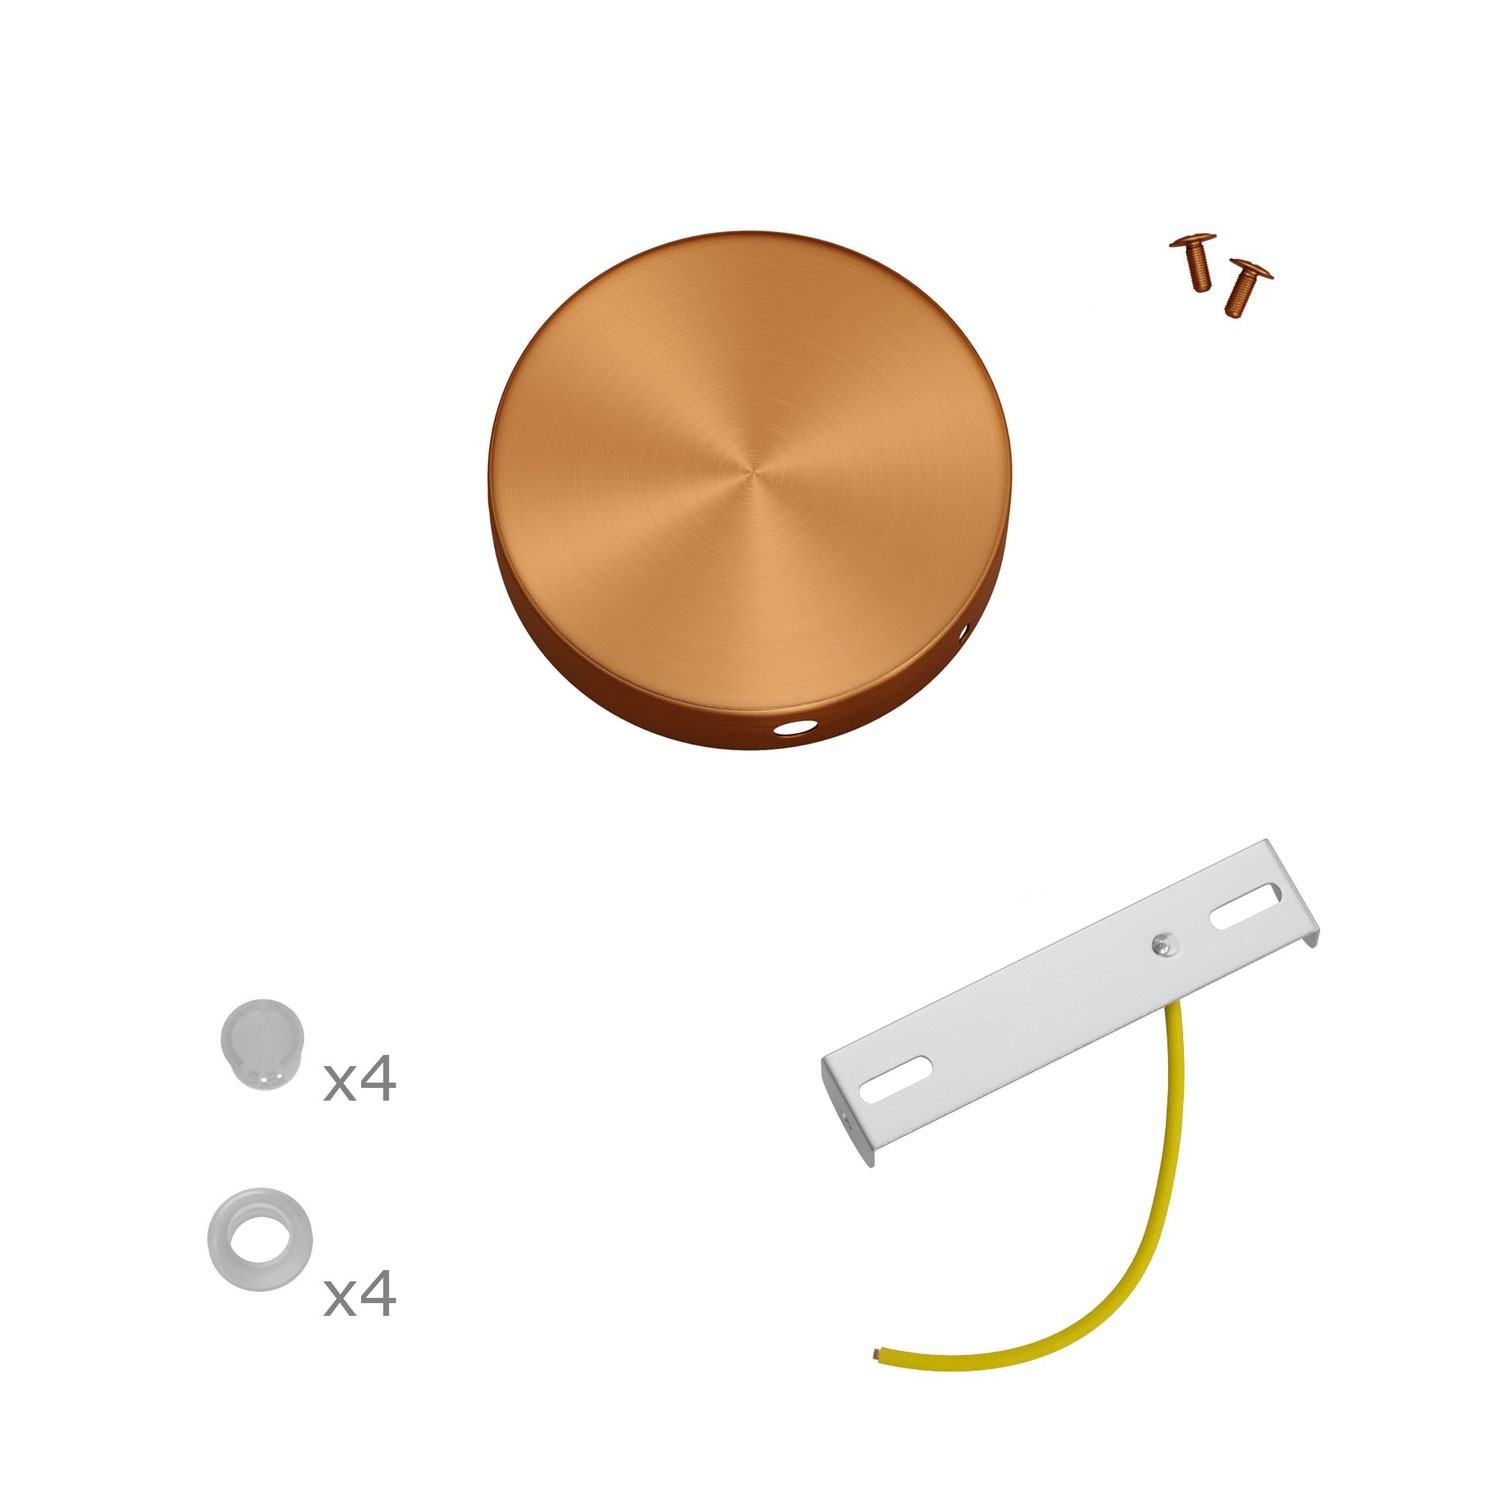 Mini zylindrischer Lampenbaldachin Kit aus Metall mit 4 Seitenlöchern (Anschlusssystem)